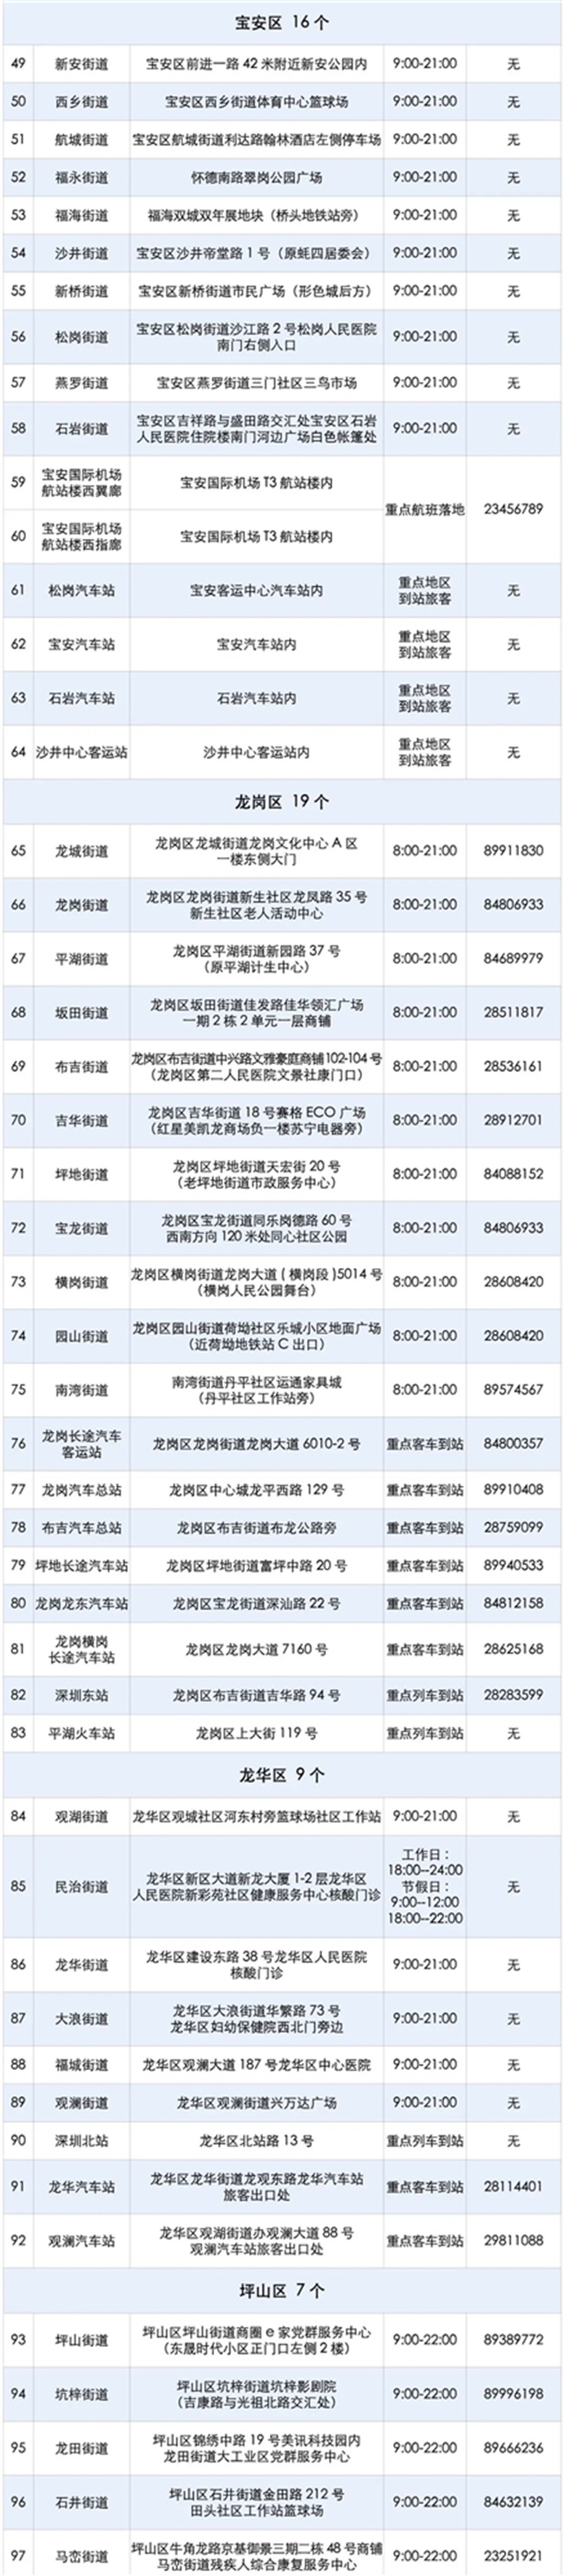 2021年8月10日深圳市免费核酸检测点增至120个